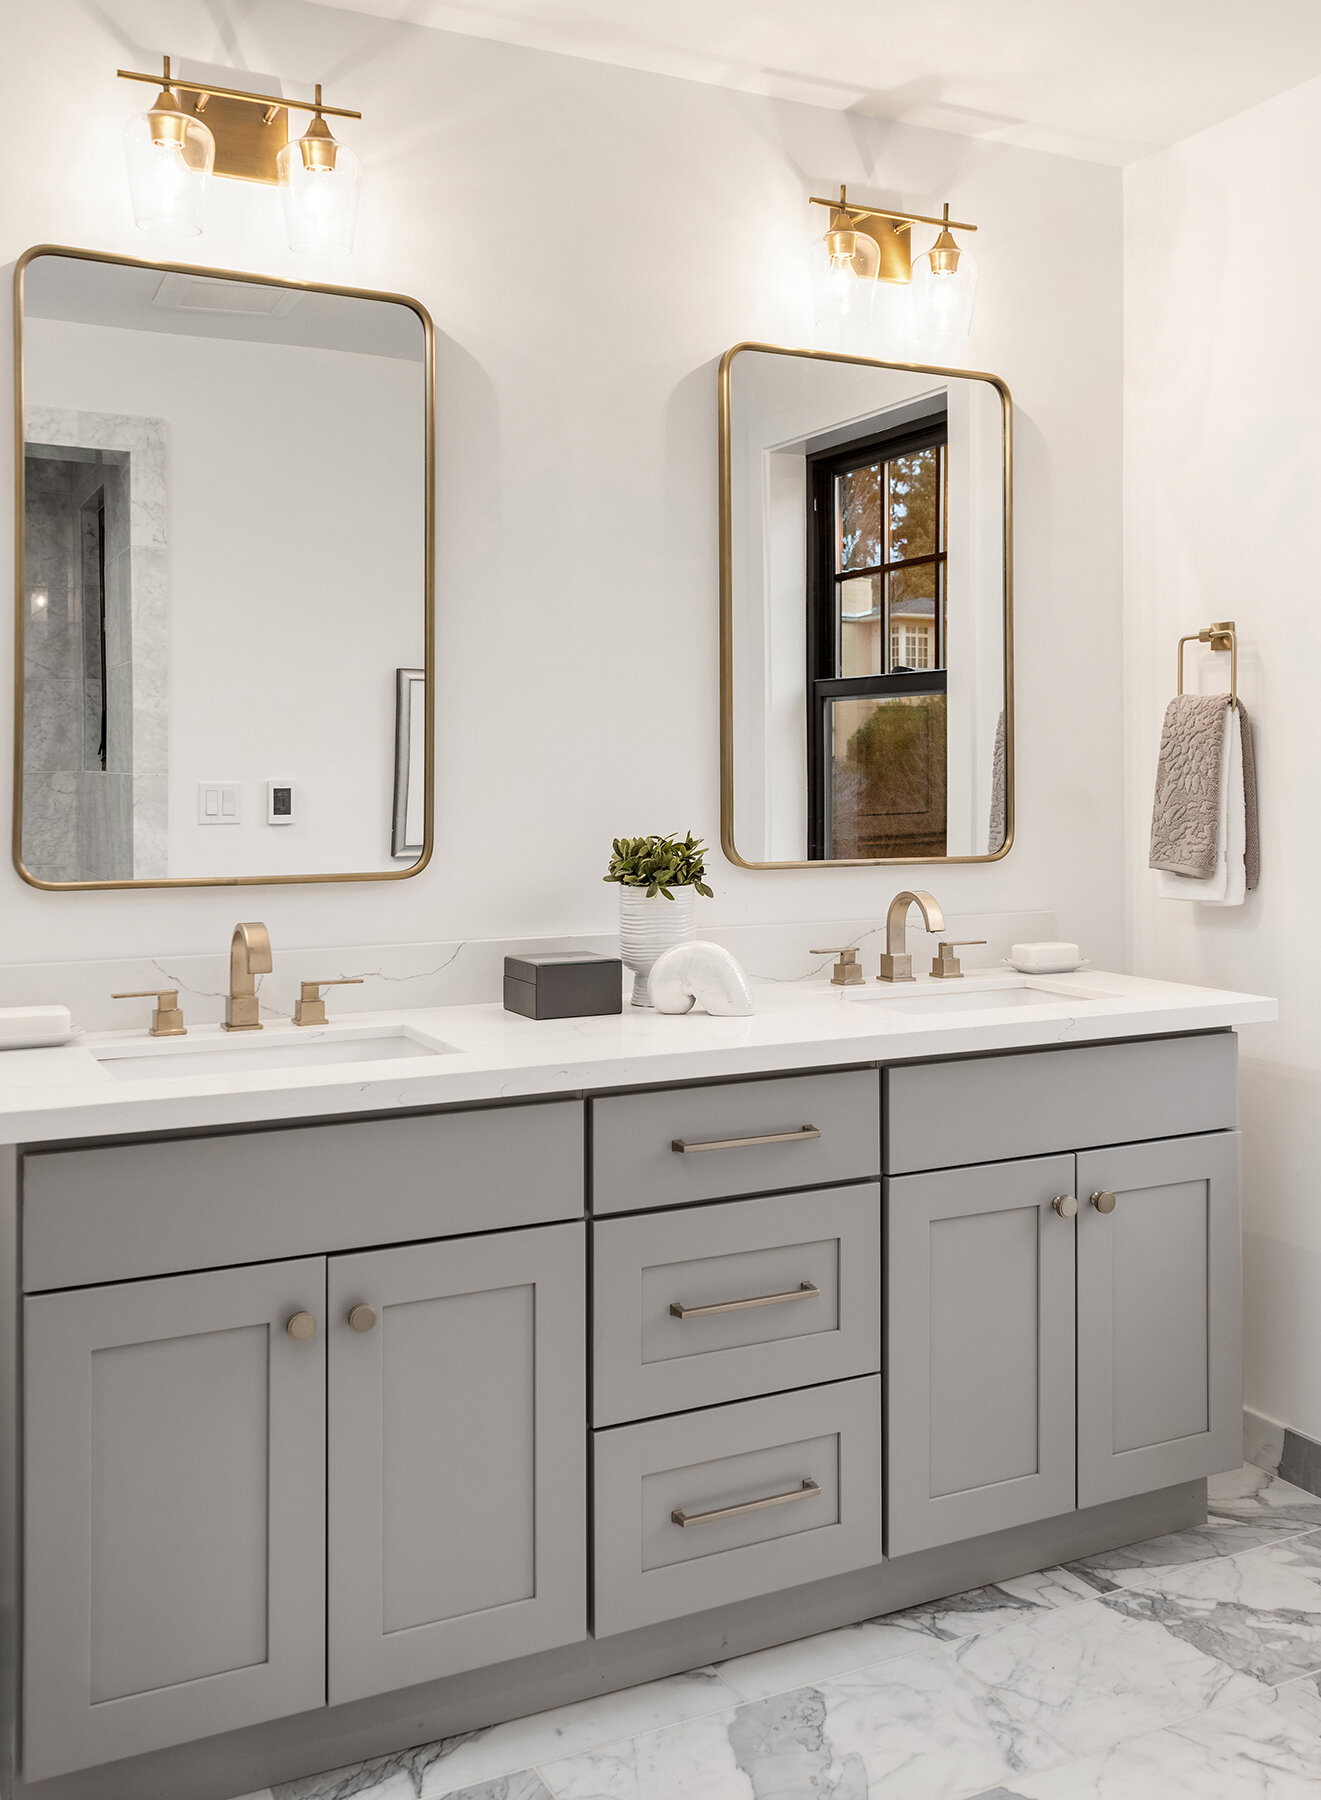 Bathrooms That Make an Impact! — Tara Nelson Designs